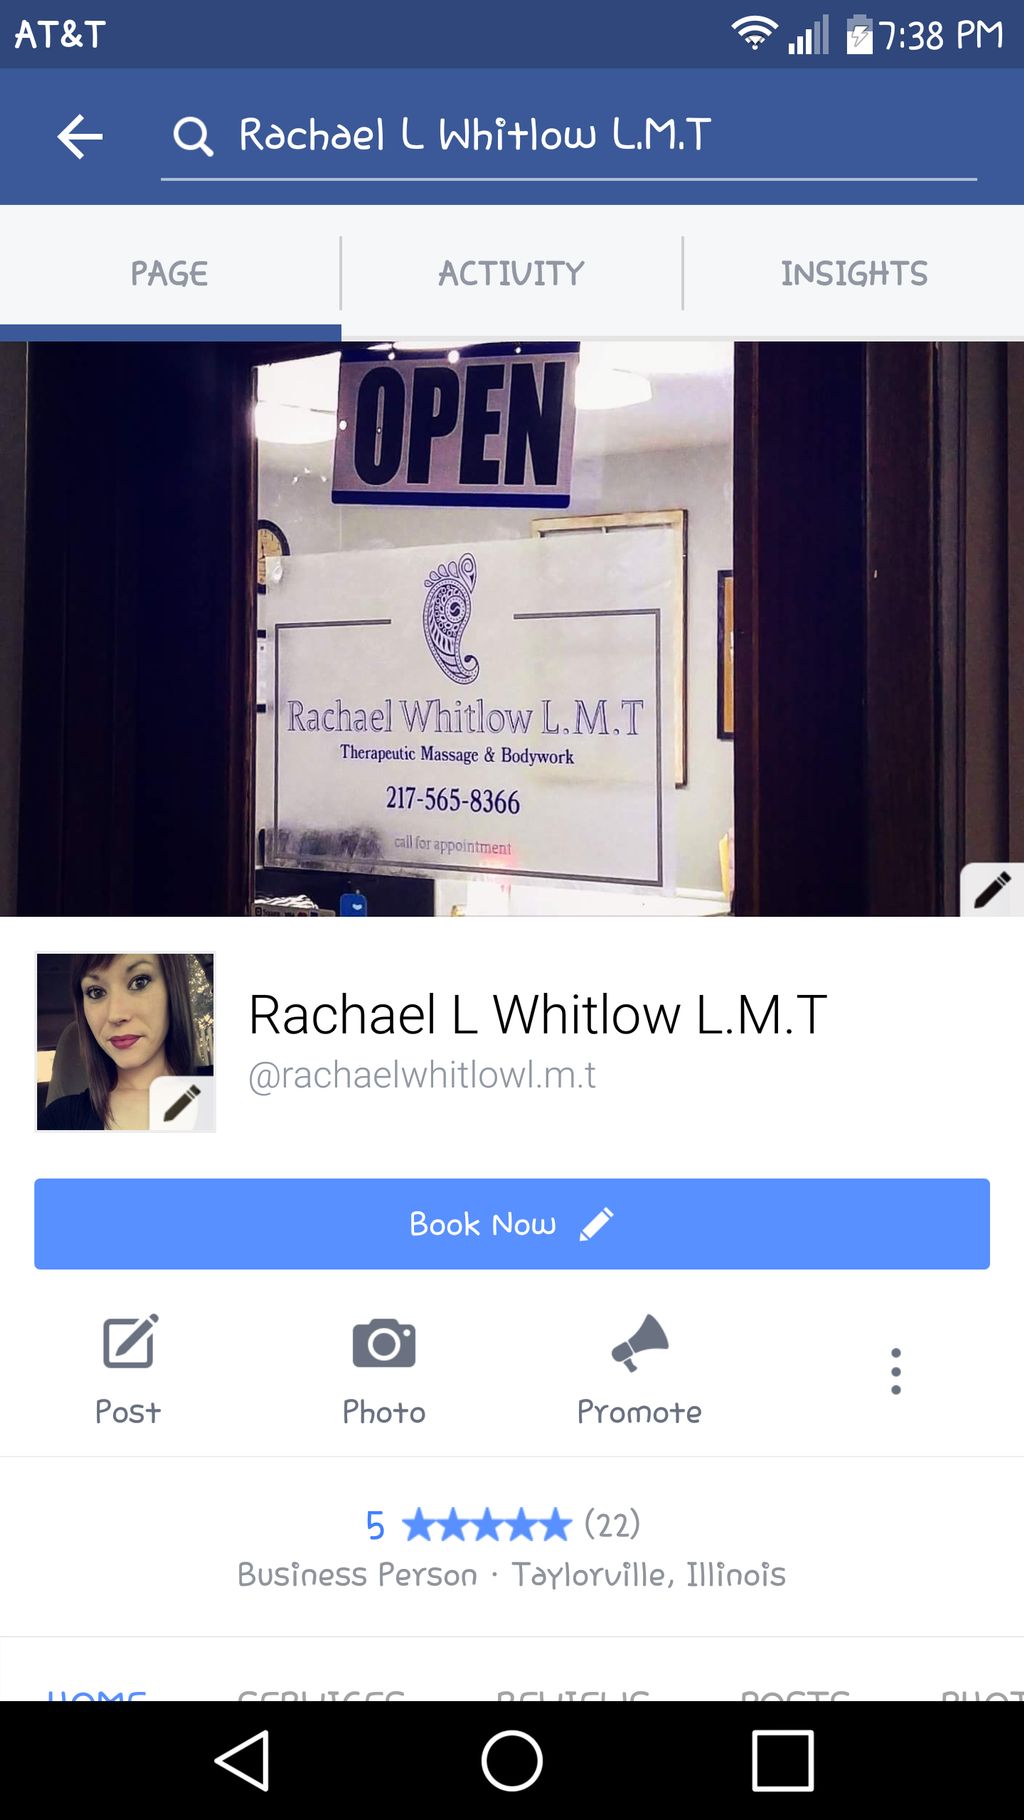 Rachael L Whitlow L.M.T